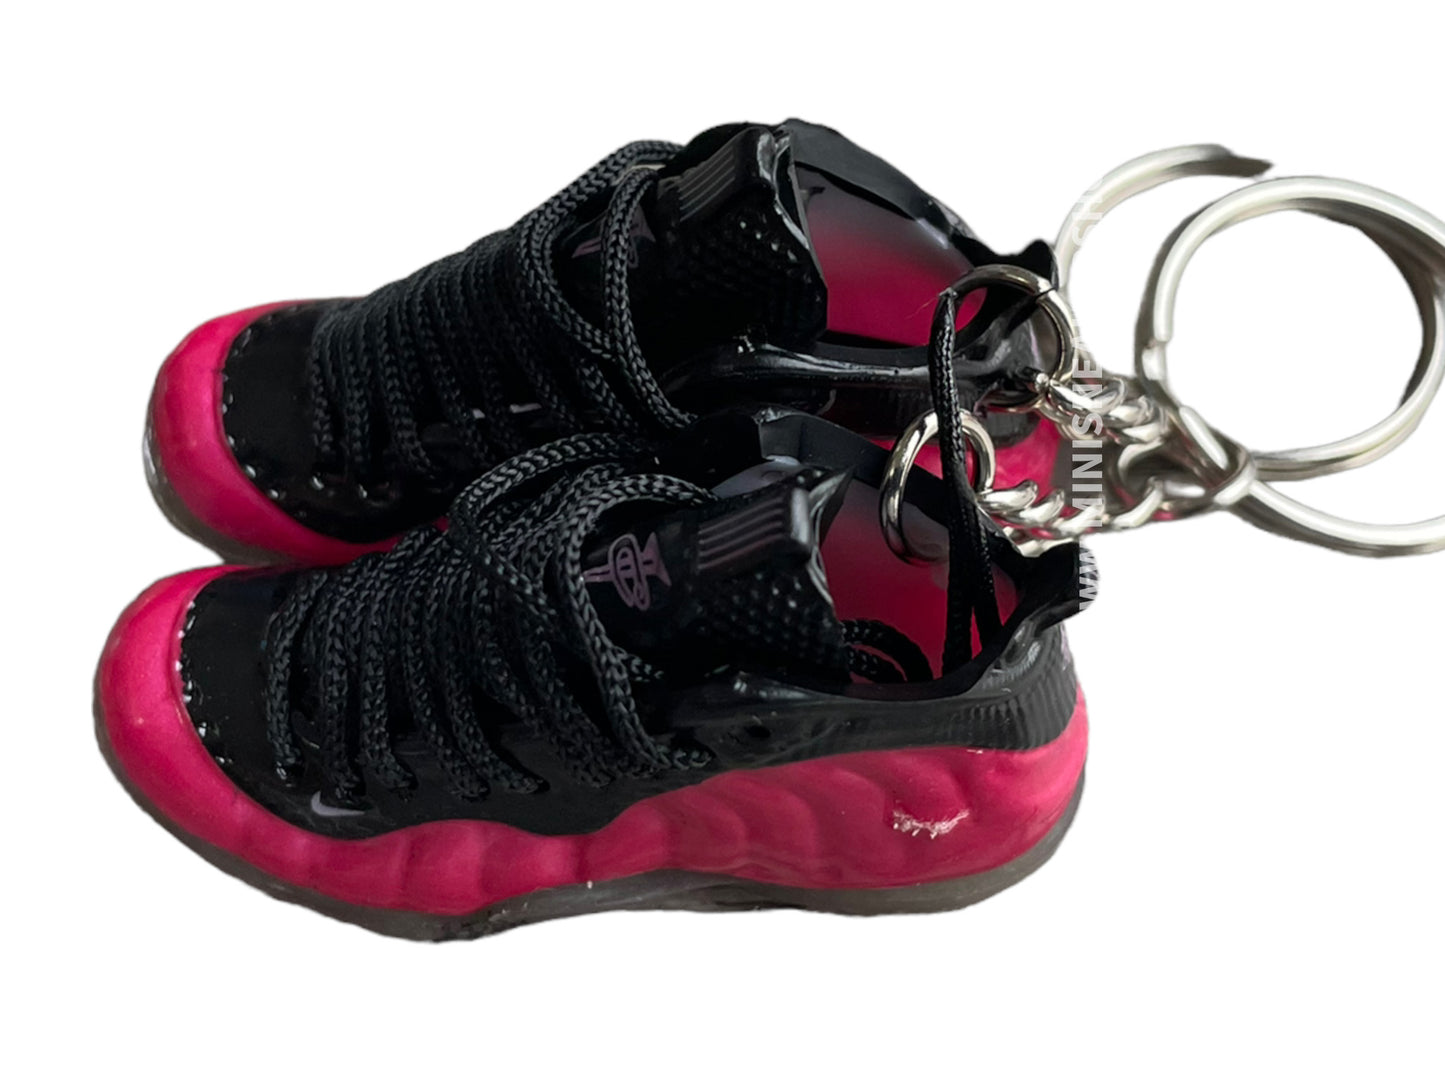 Mini sneaker keychain 3D Foamposite - Fushia Pink